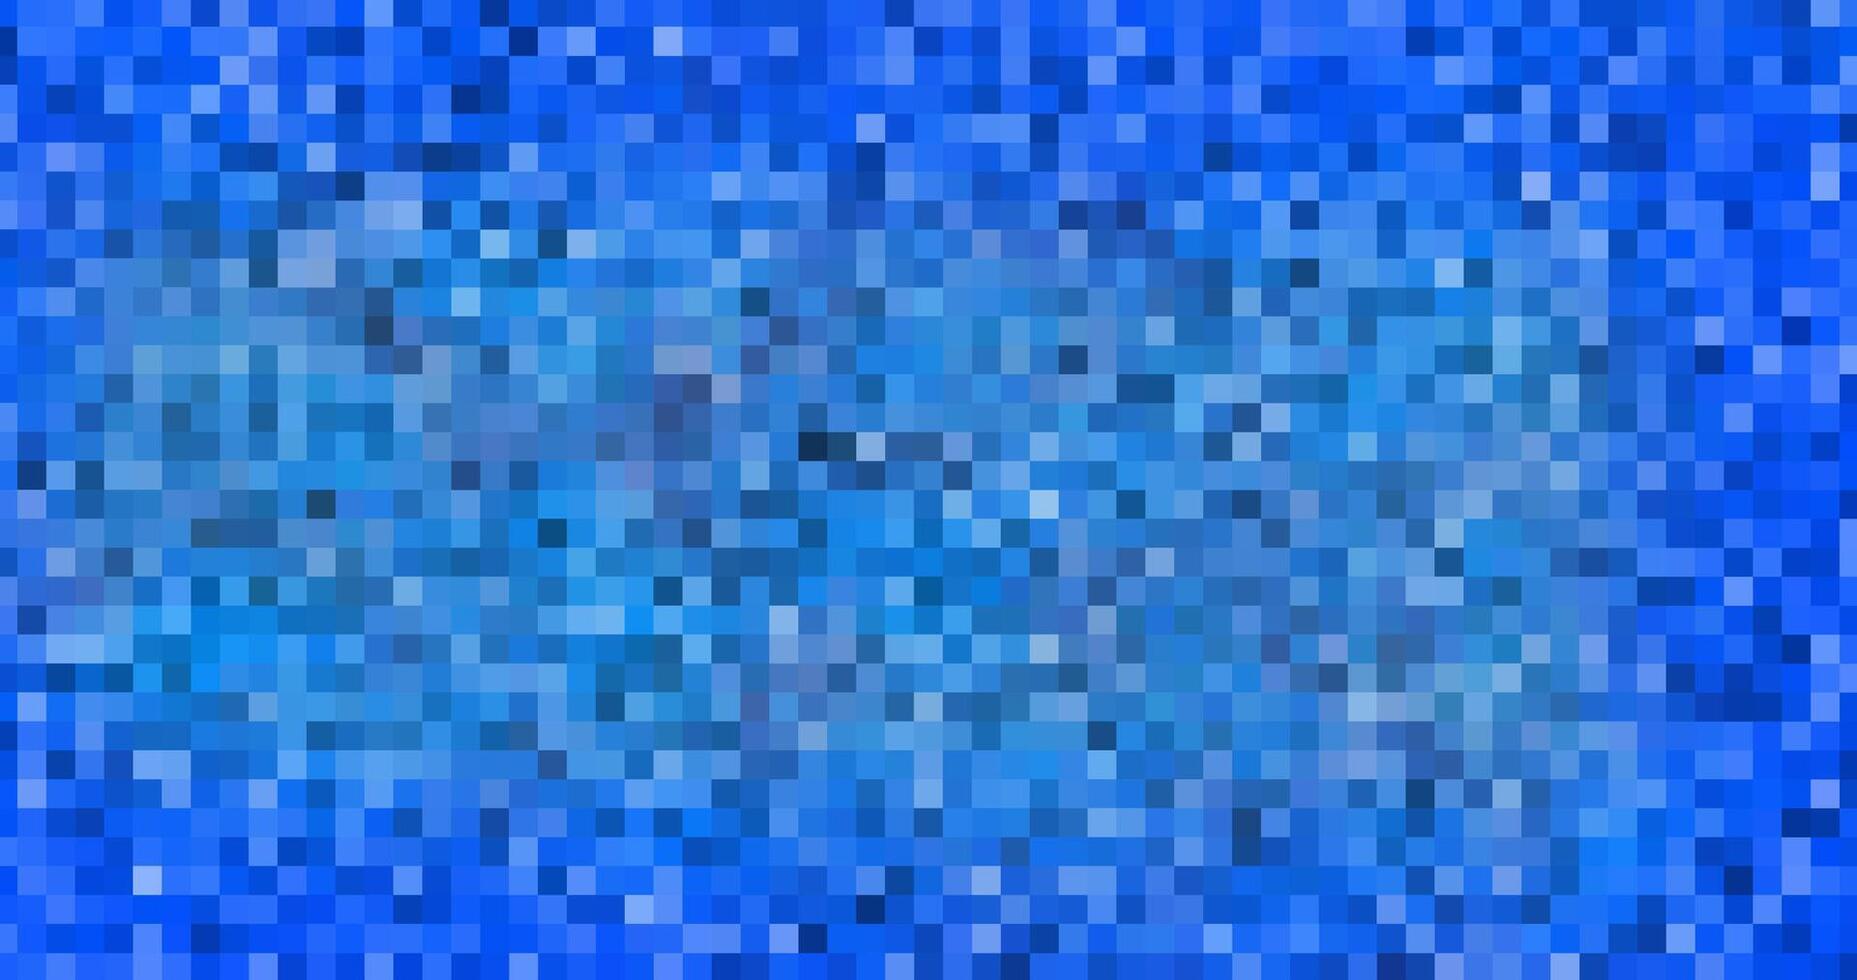 abstrakt modern beschwingt Blau Farbe Hintergrund vektor